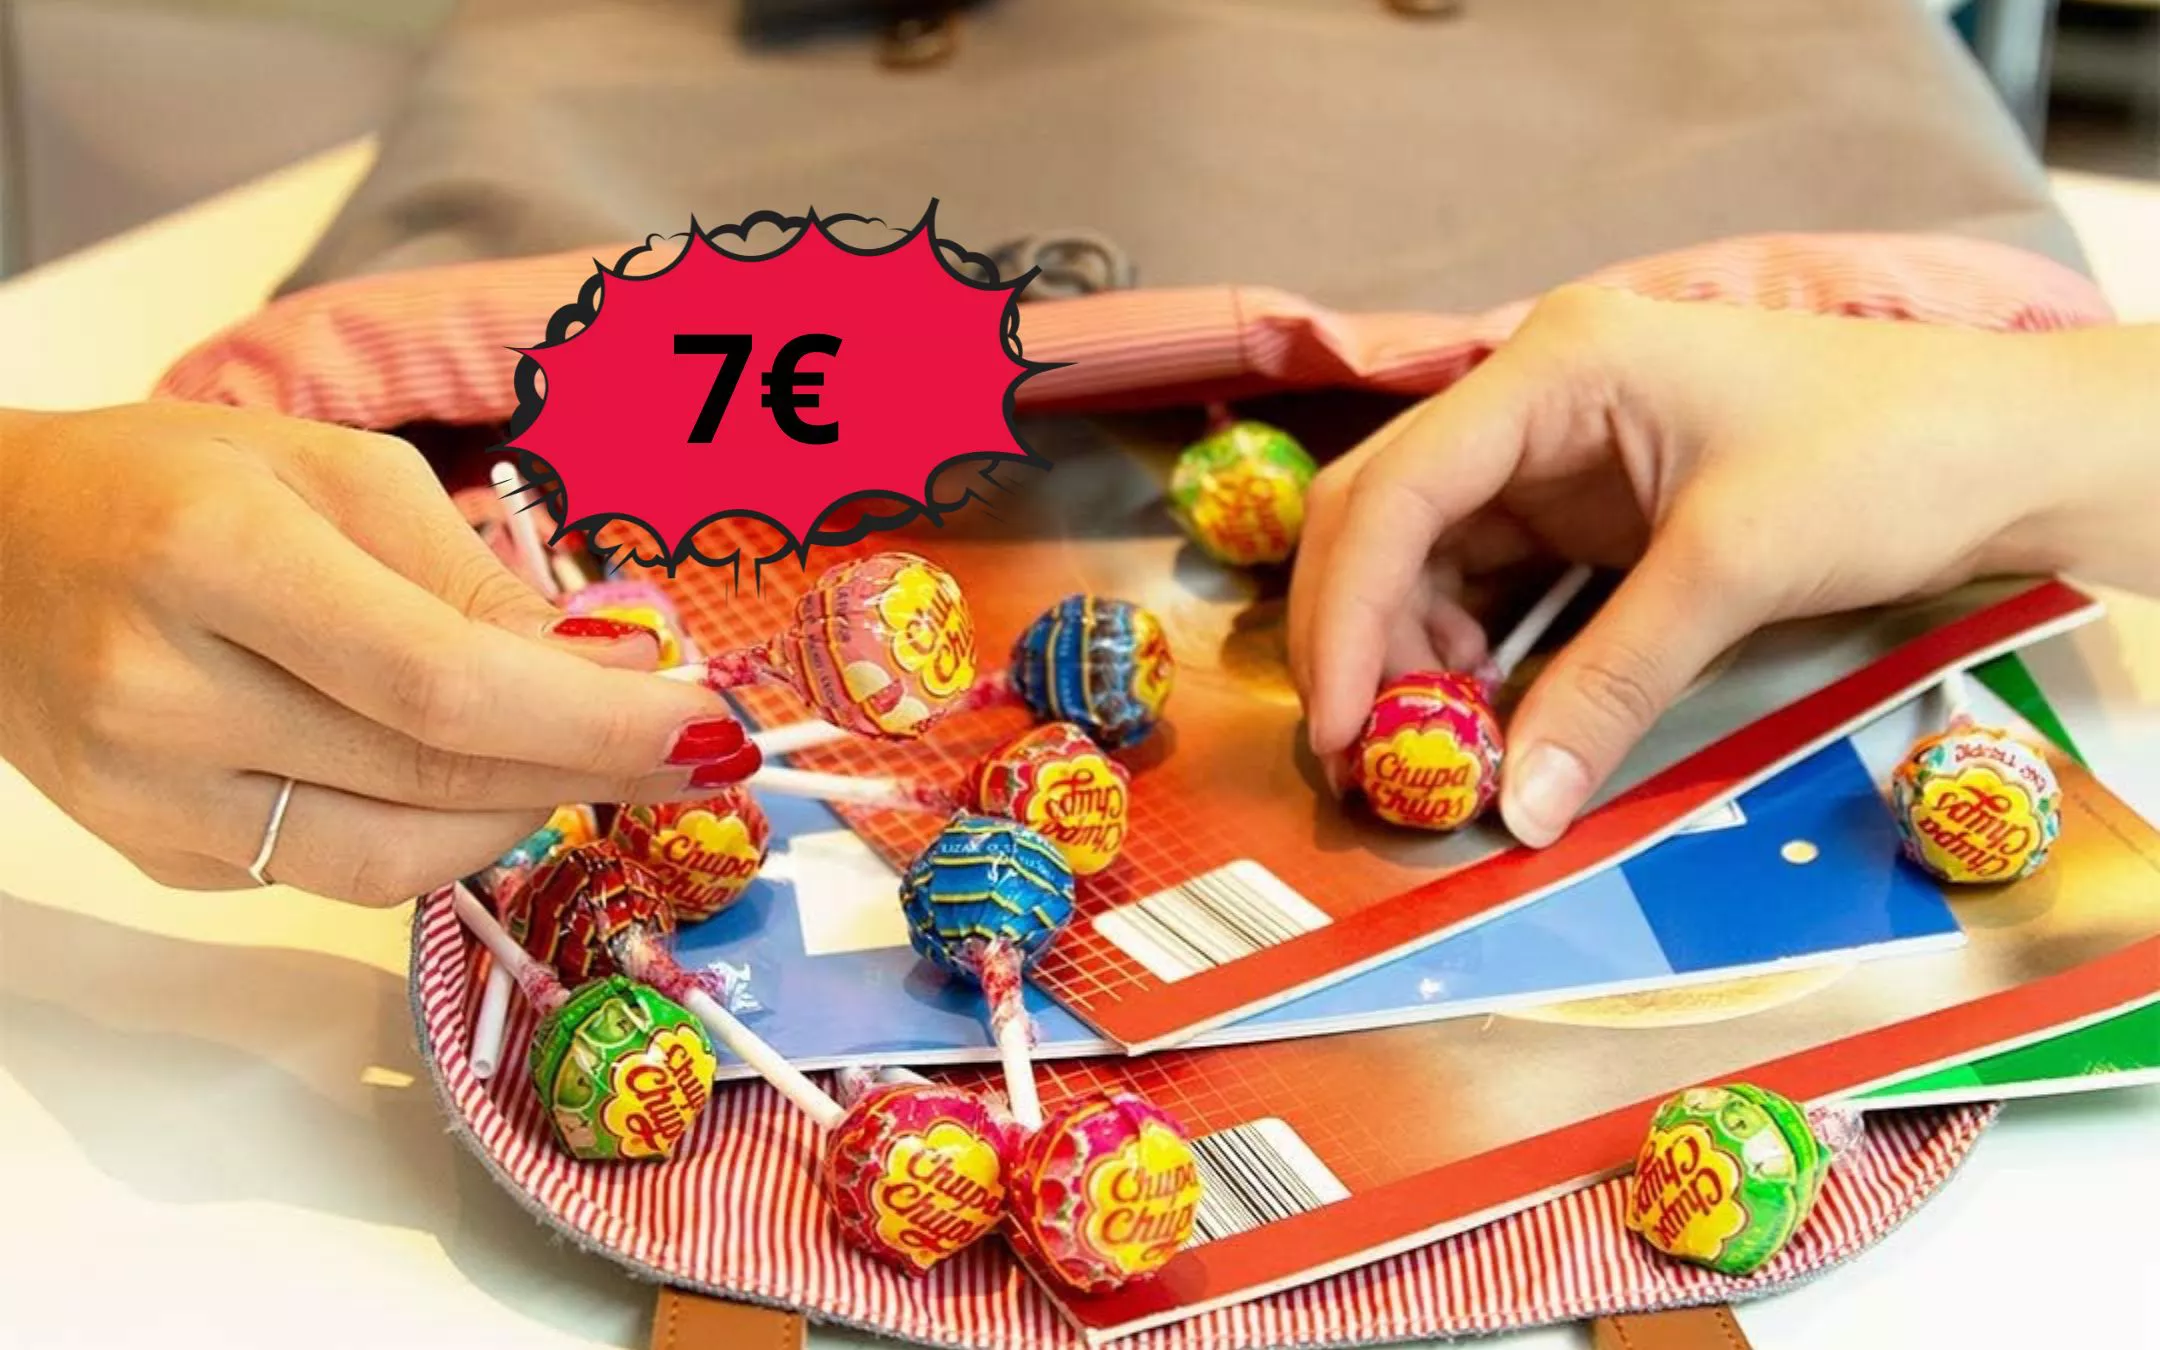 Adori i Chupa Chups? Allora prendi questo Box Margherita con 30 lollipop a  soli 7 euro: gusti cola e frutta - Webnews